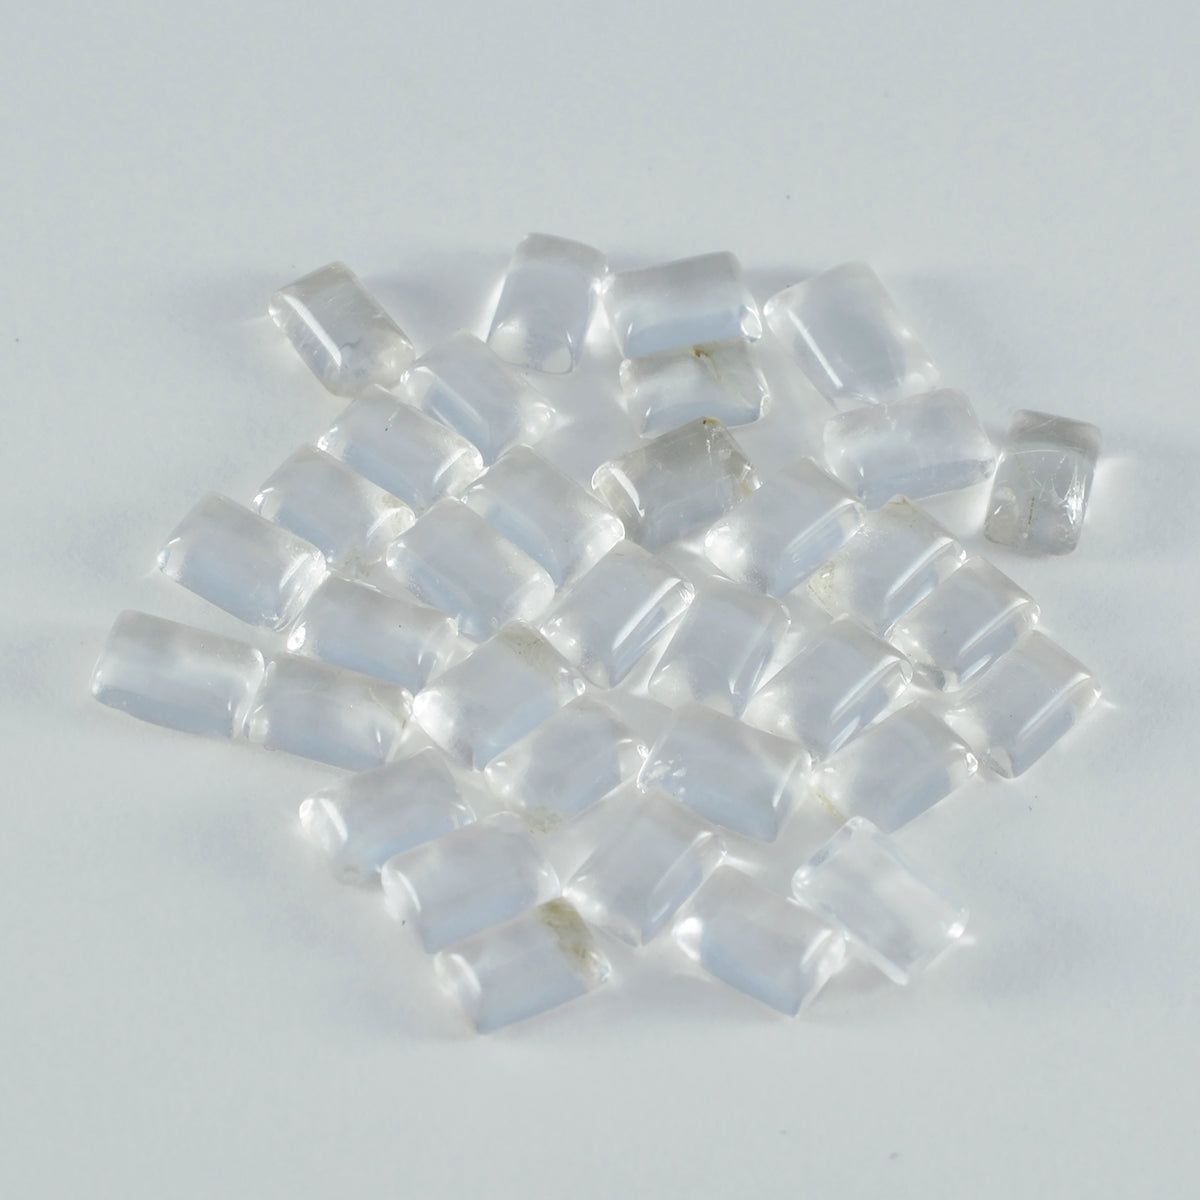 Riyogems 1 Stück weißer Kristallquarz-Cabochon, 4 x 6 mm, achteckige Form, Edelstein von ausgezeichneter Qualität